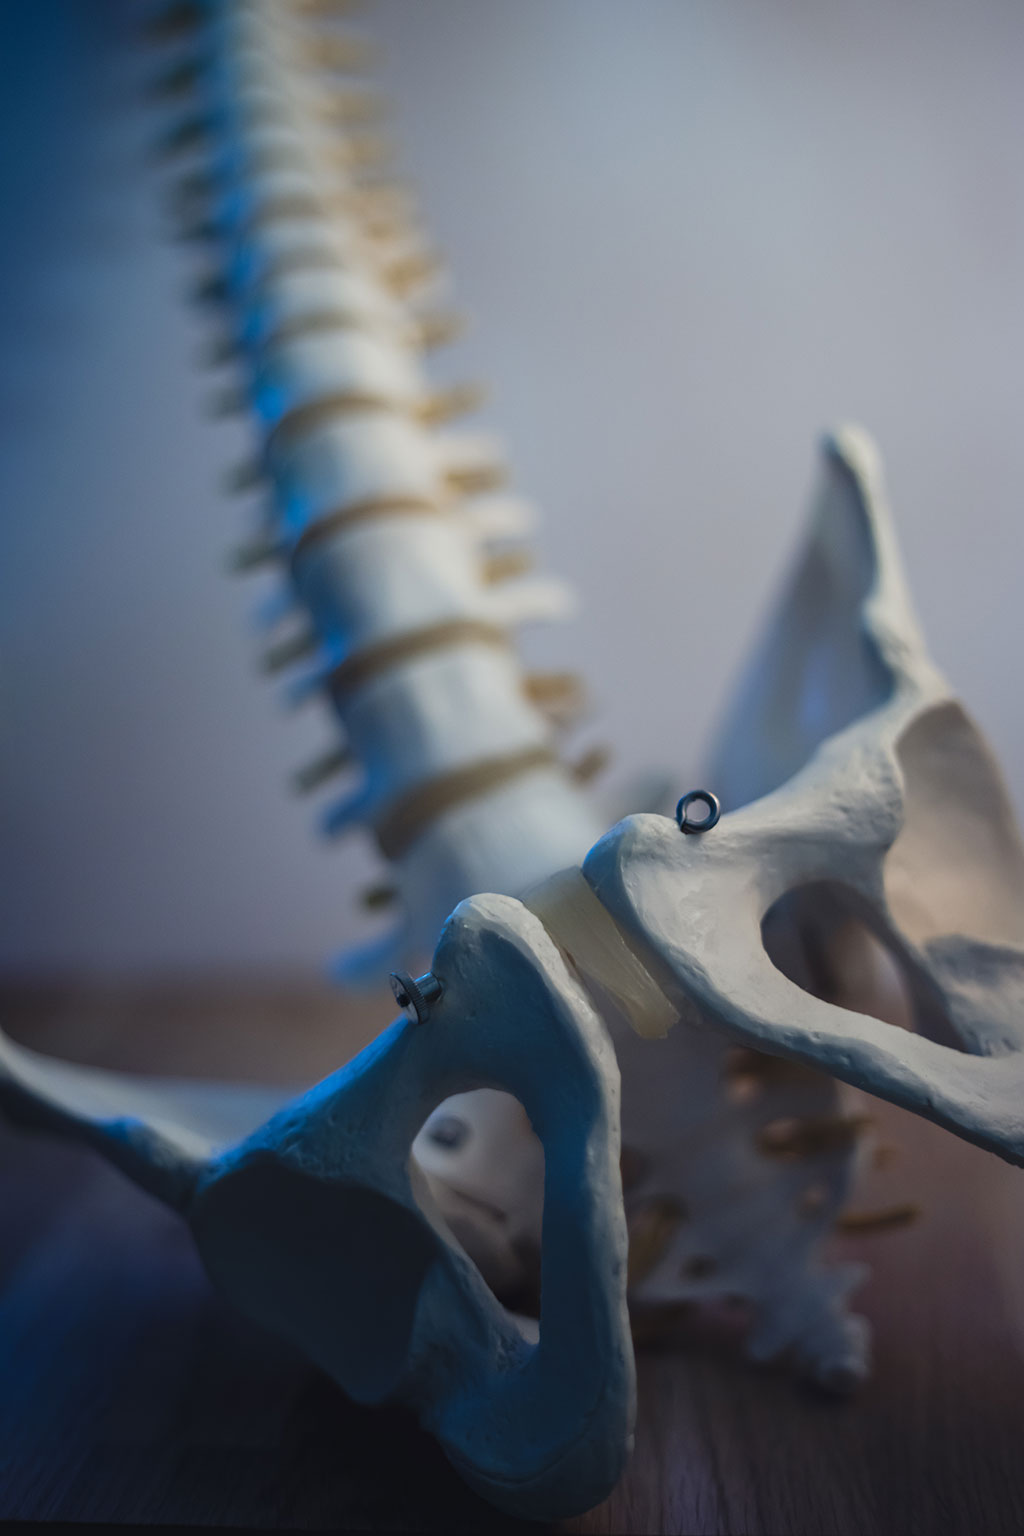 Imagen: Un material nuevo único ha mostrado ser significativamente prometedor en el tratamiento de la lesión de la médula espinal (Fotografía cortesía de Unsplash)